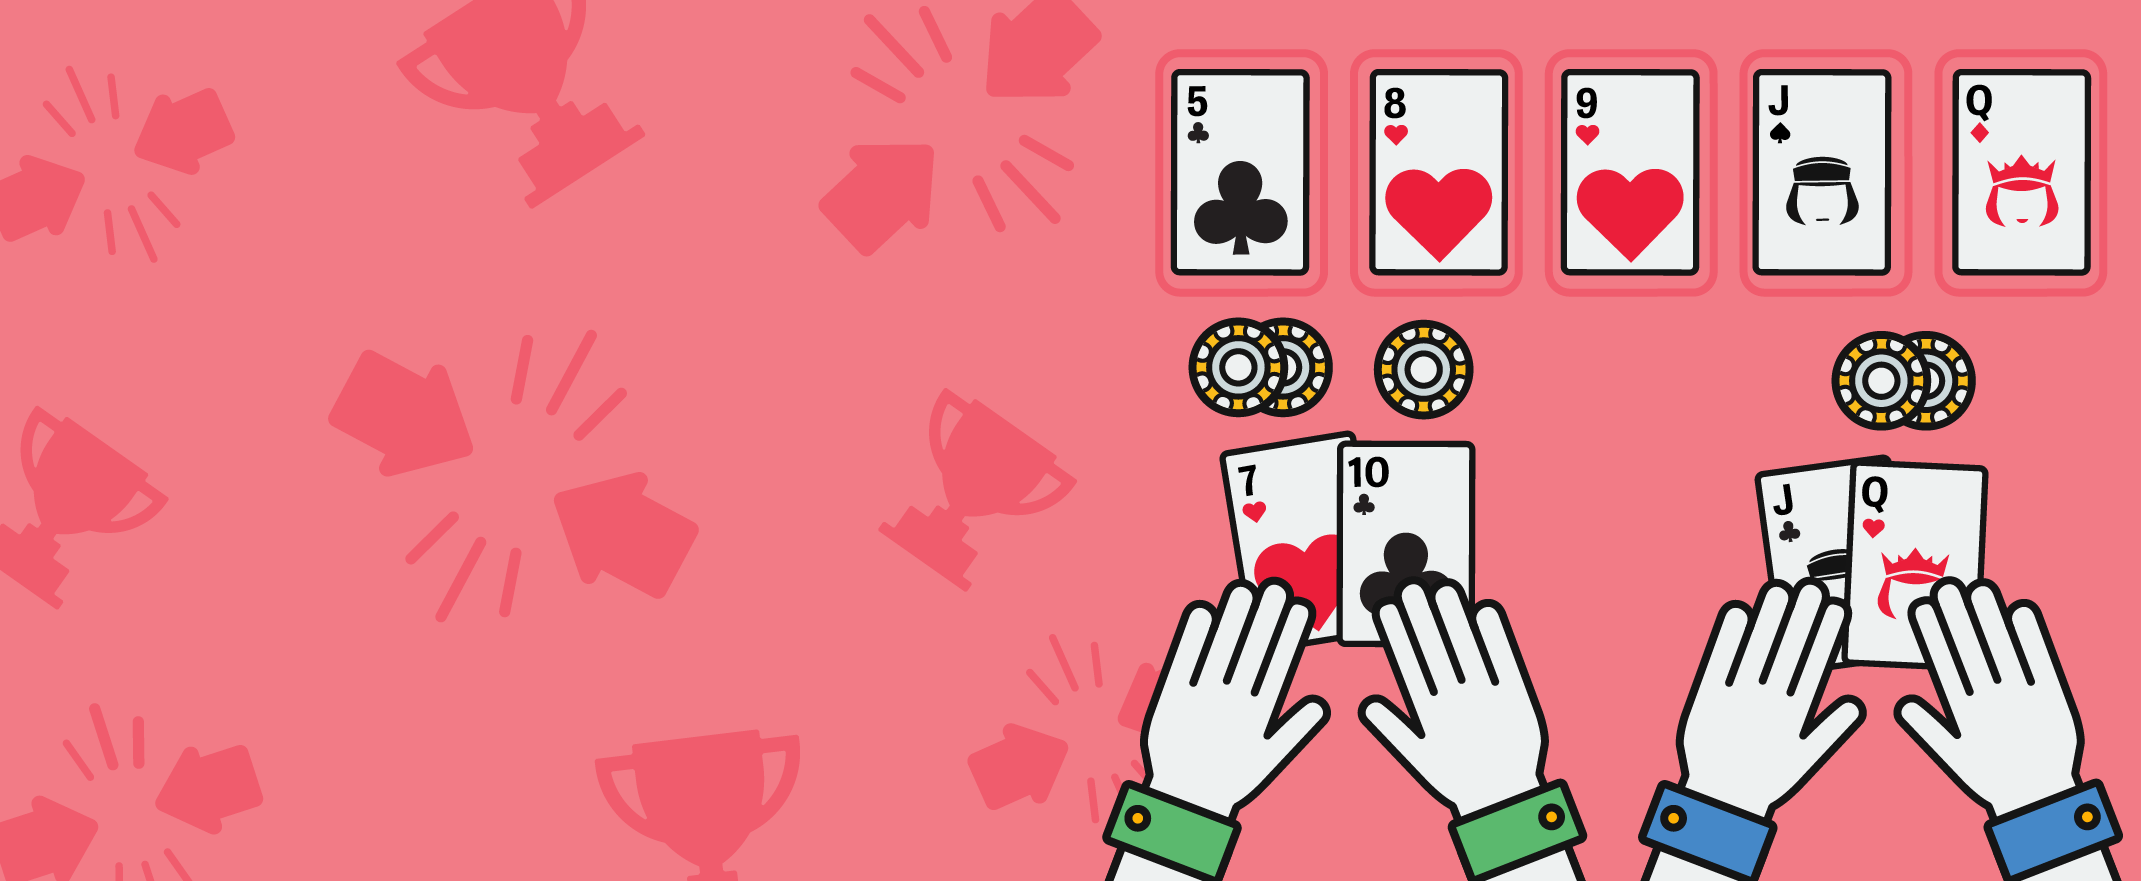 Poker Ratgeber - Den Showdown verstehen lernen